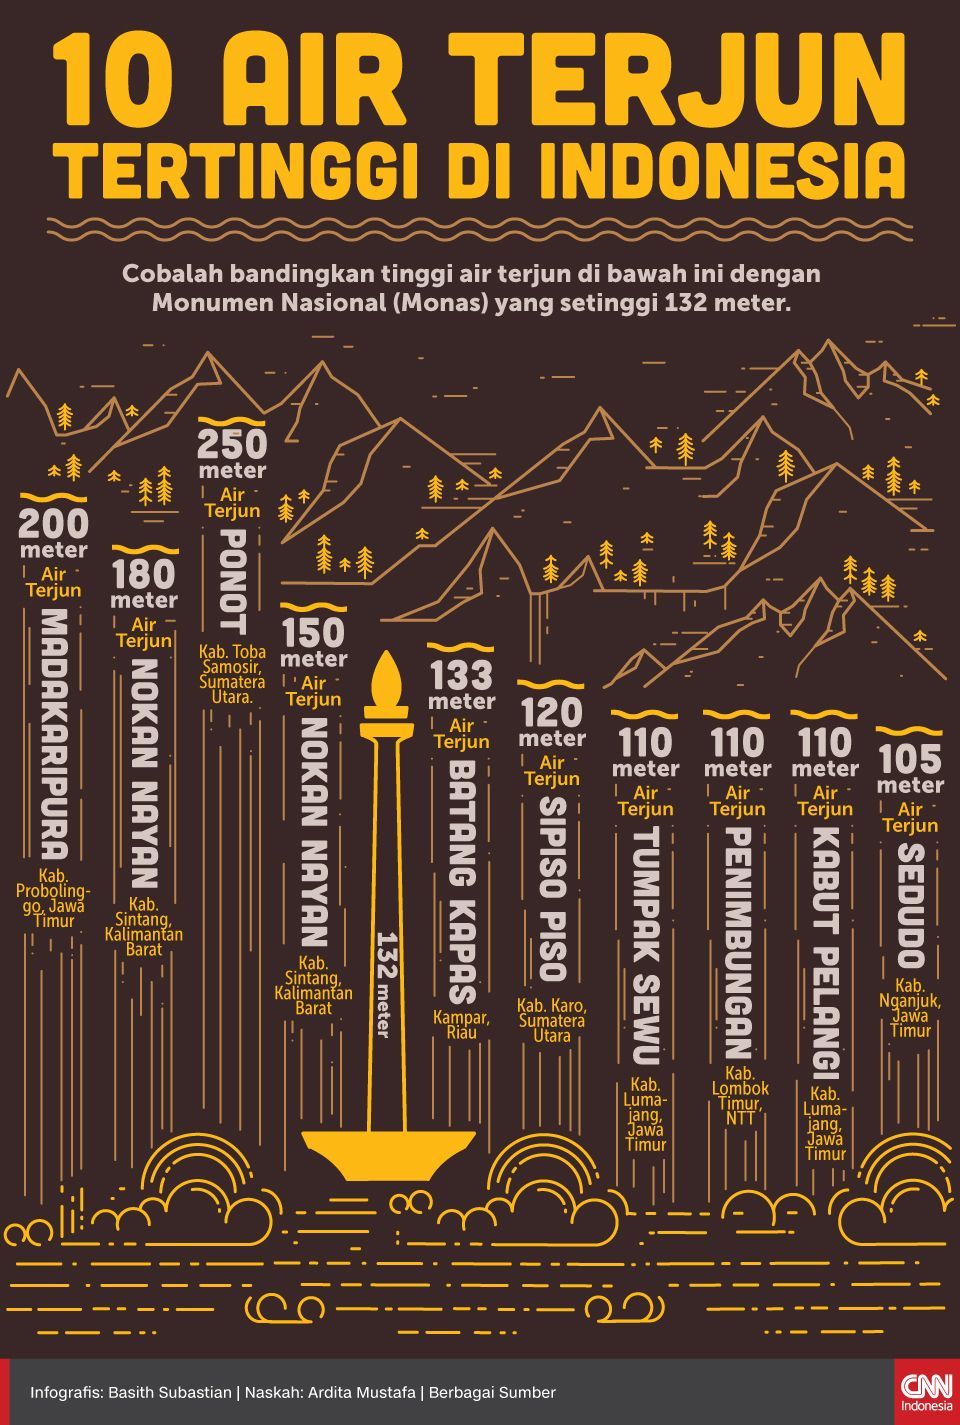 Infografis 10 Air Terjun Tertinggi di Indonesia